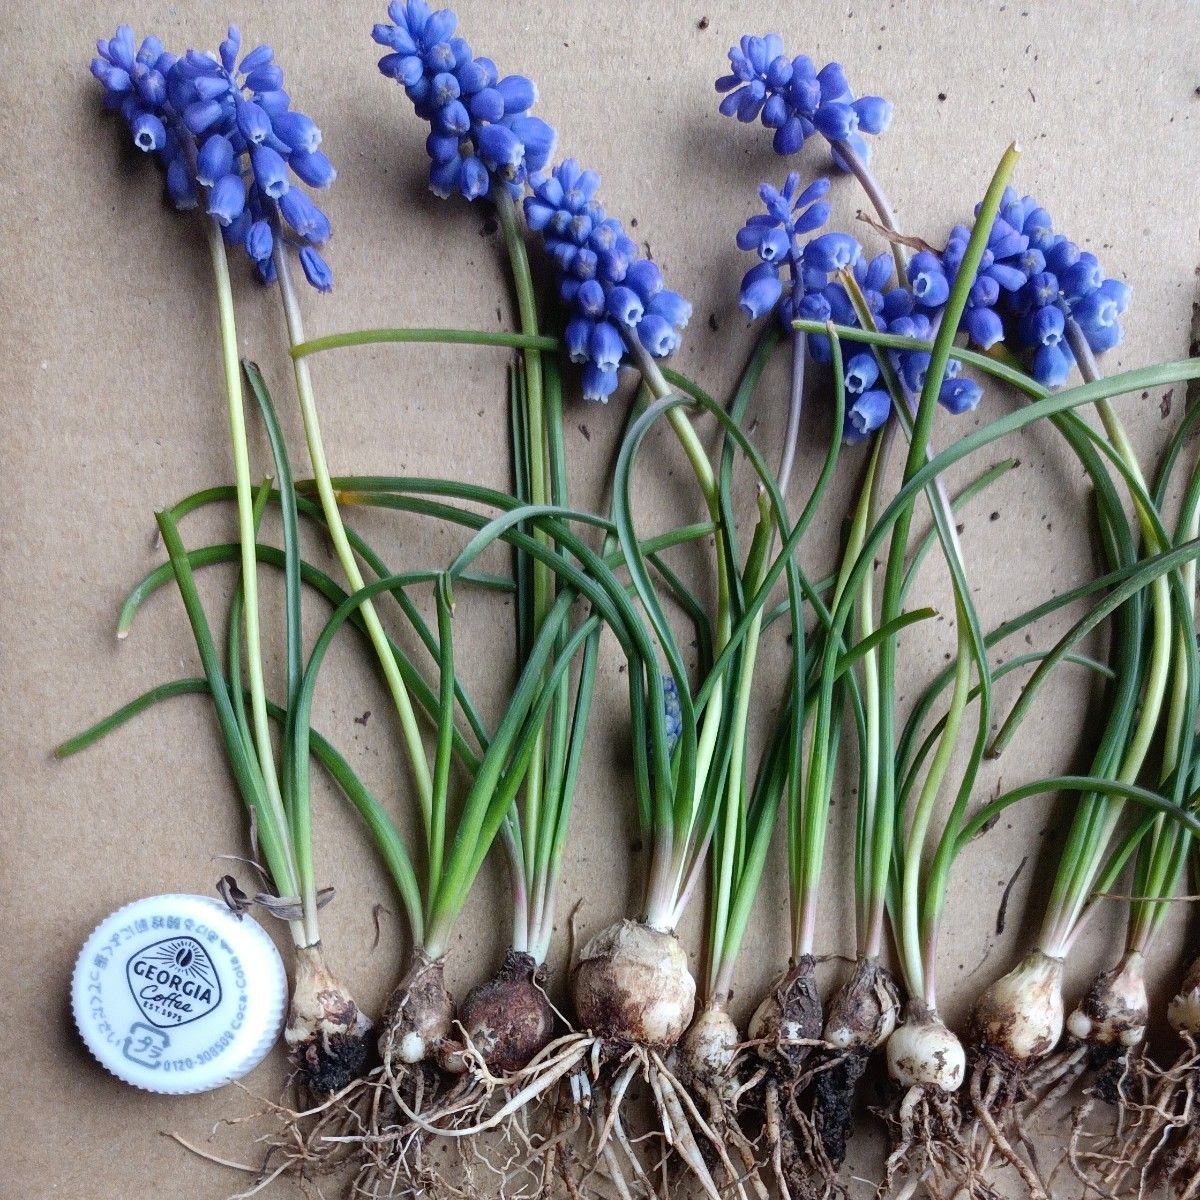 ムスカリ 青紫色 15本 耐寒性が強い すべて花付き 来年もすべて咲きます 現物写真です 4-2